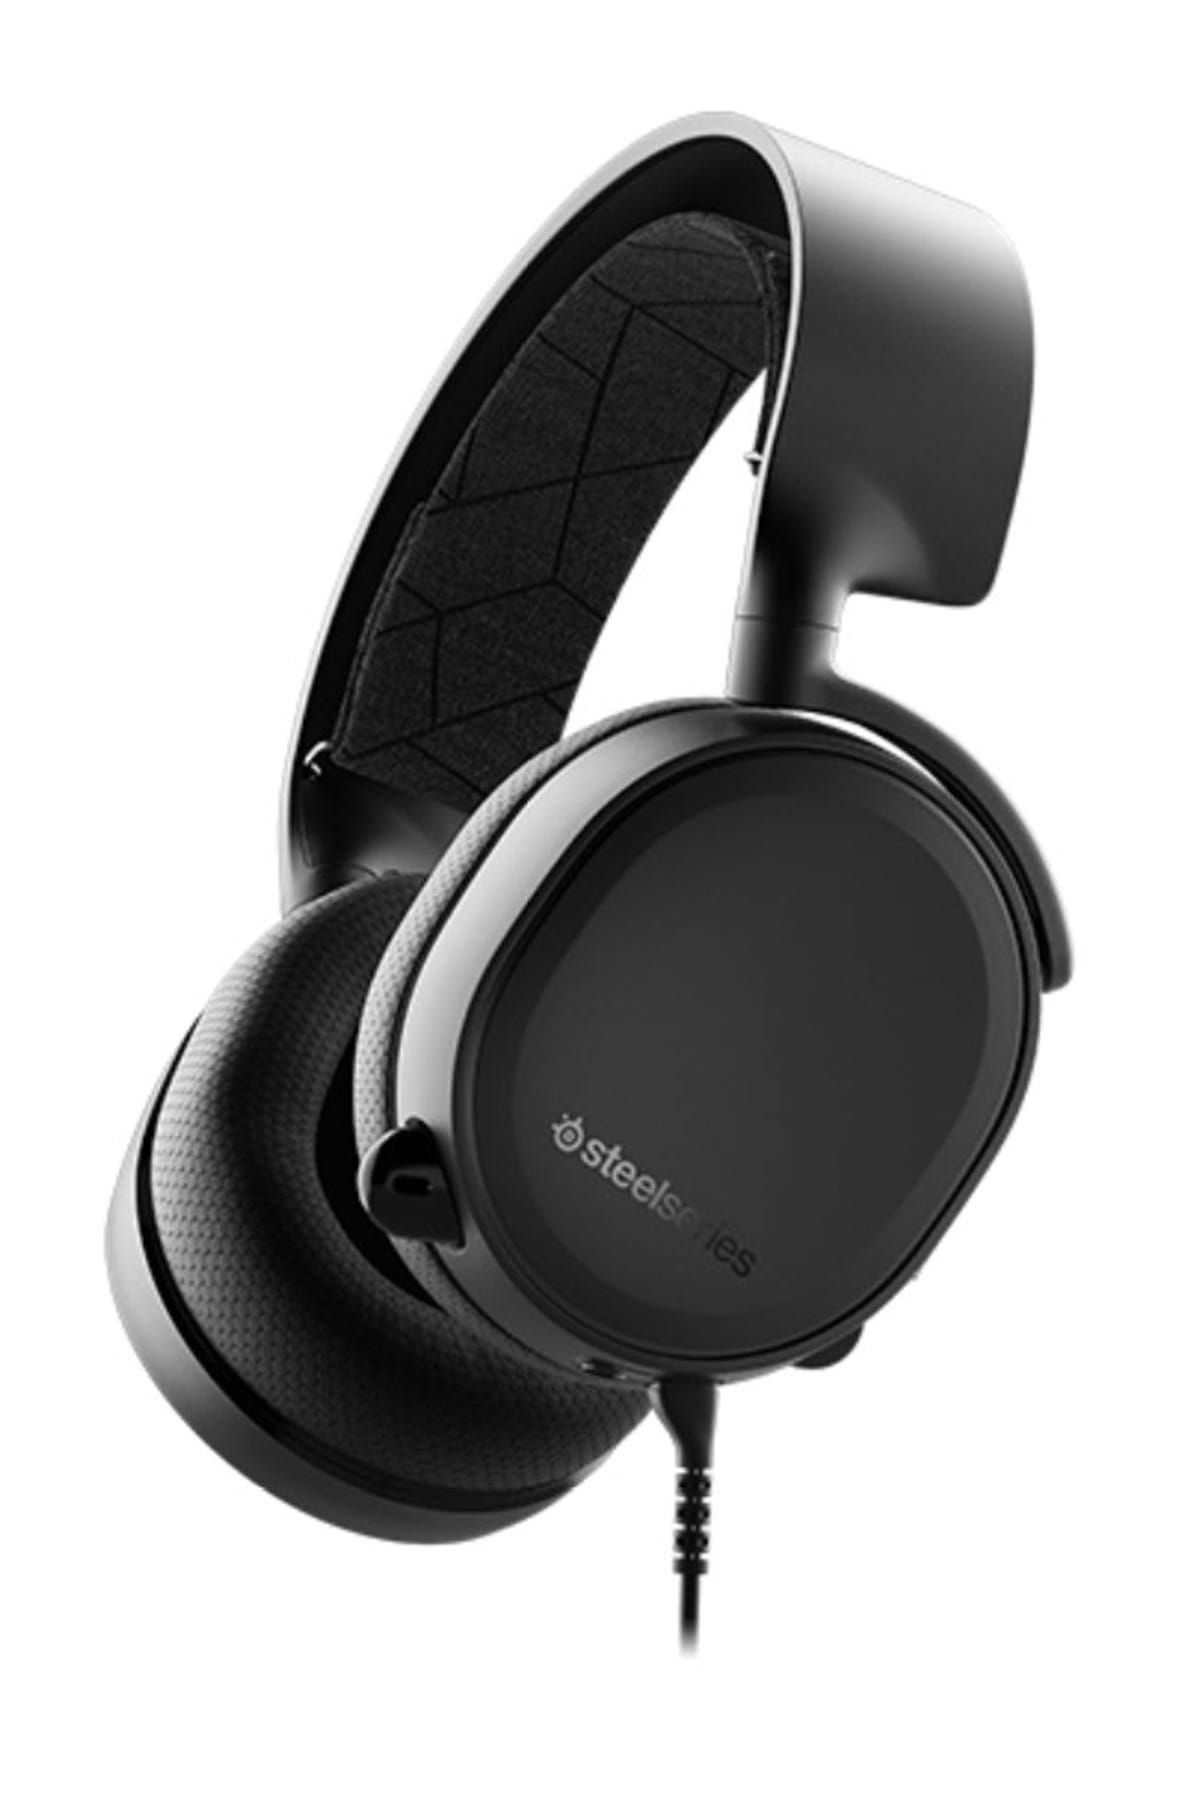 SteelSeries Arctis 3 Siyah 2019 Edition Oyuncu Kulaklık 7.1 Mikrofonlu